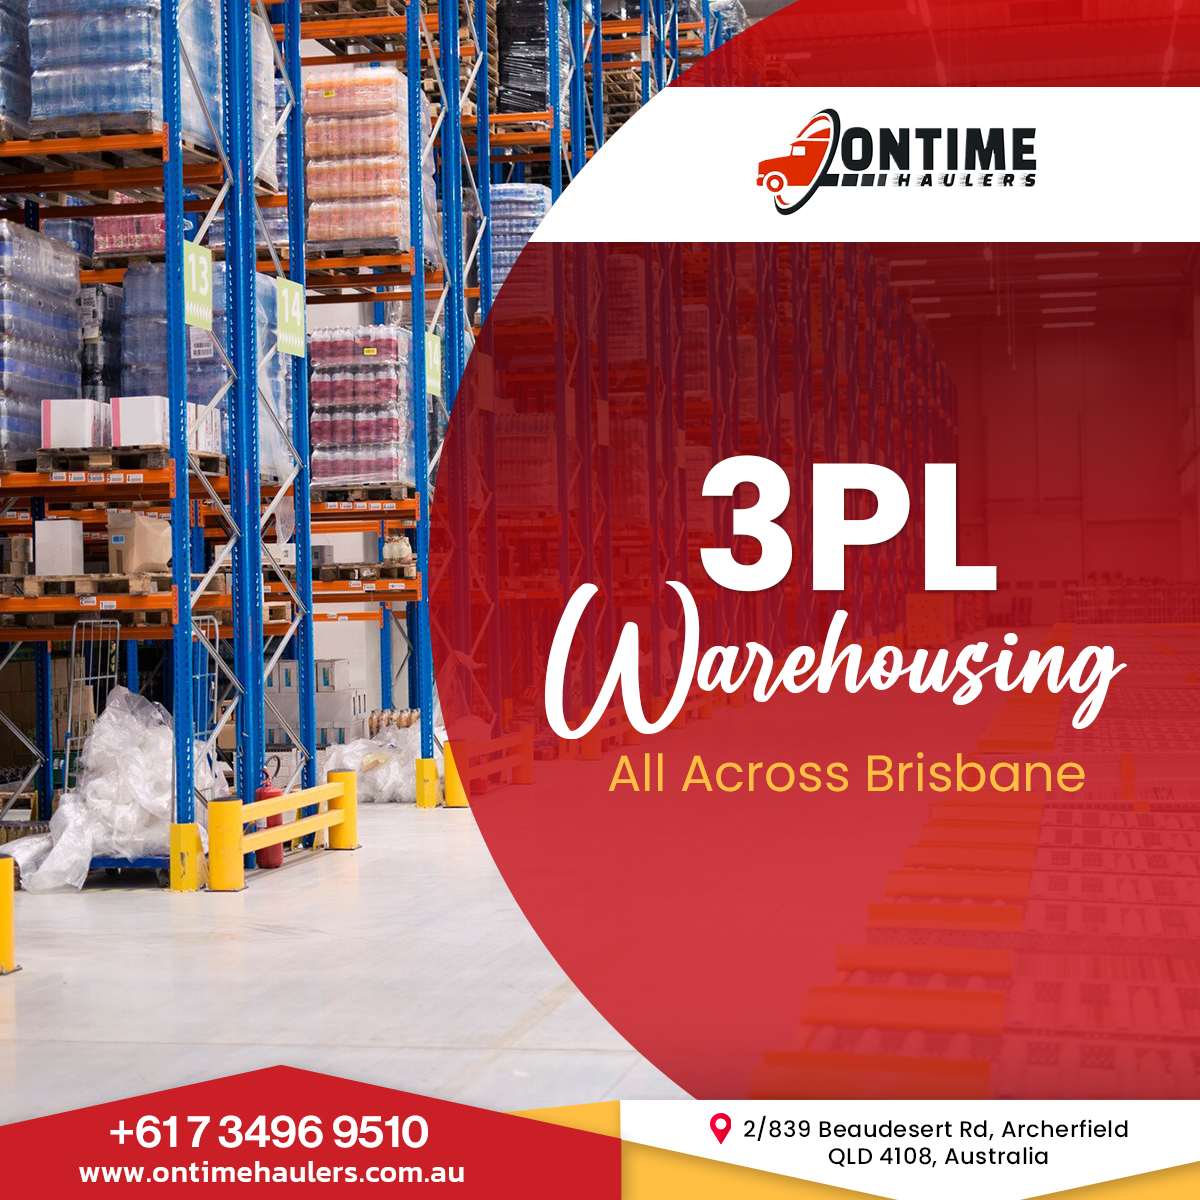 3PL Warehousing Services in Brisbane